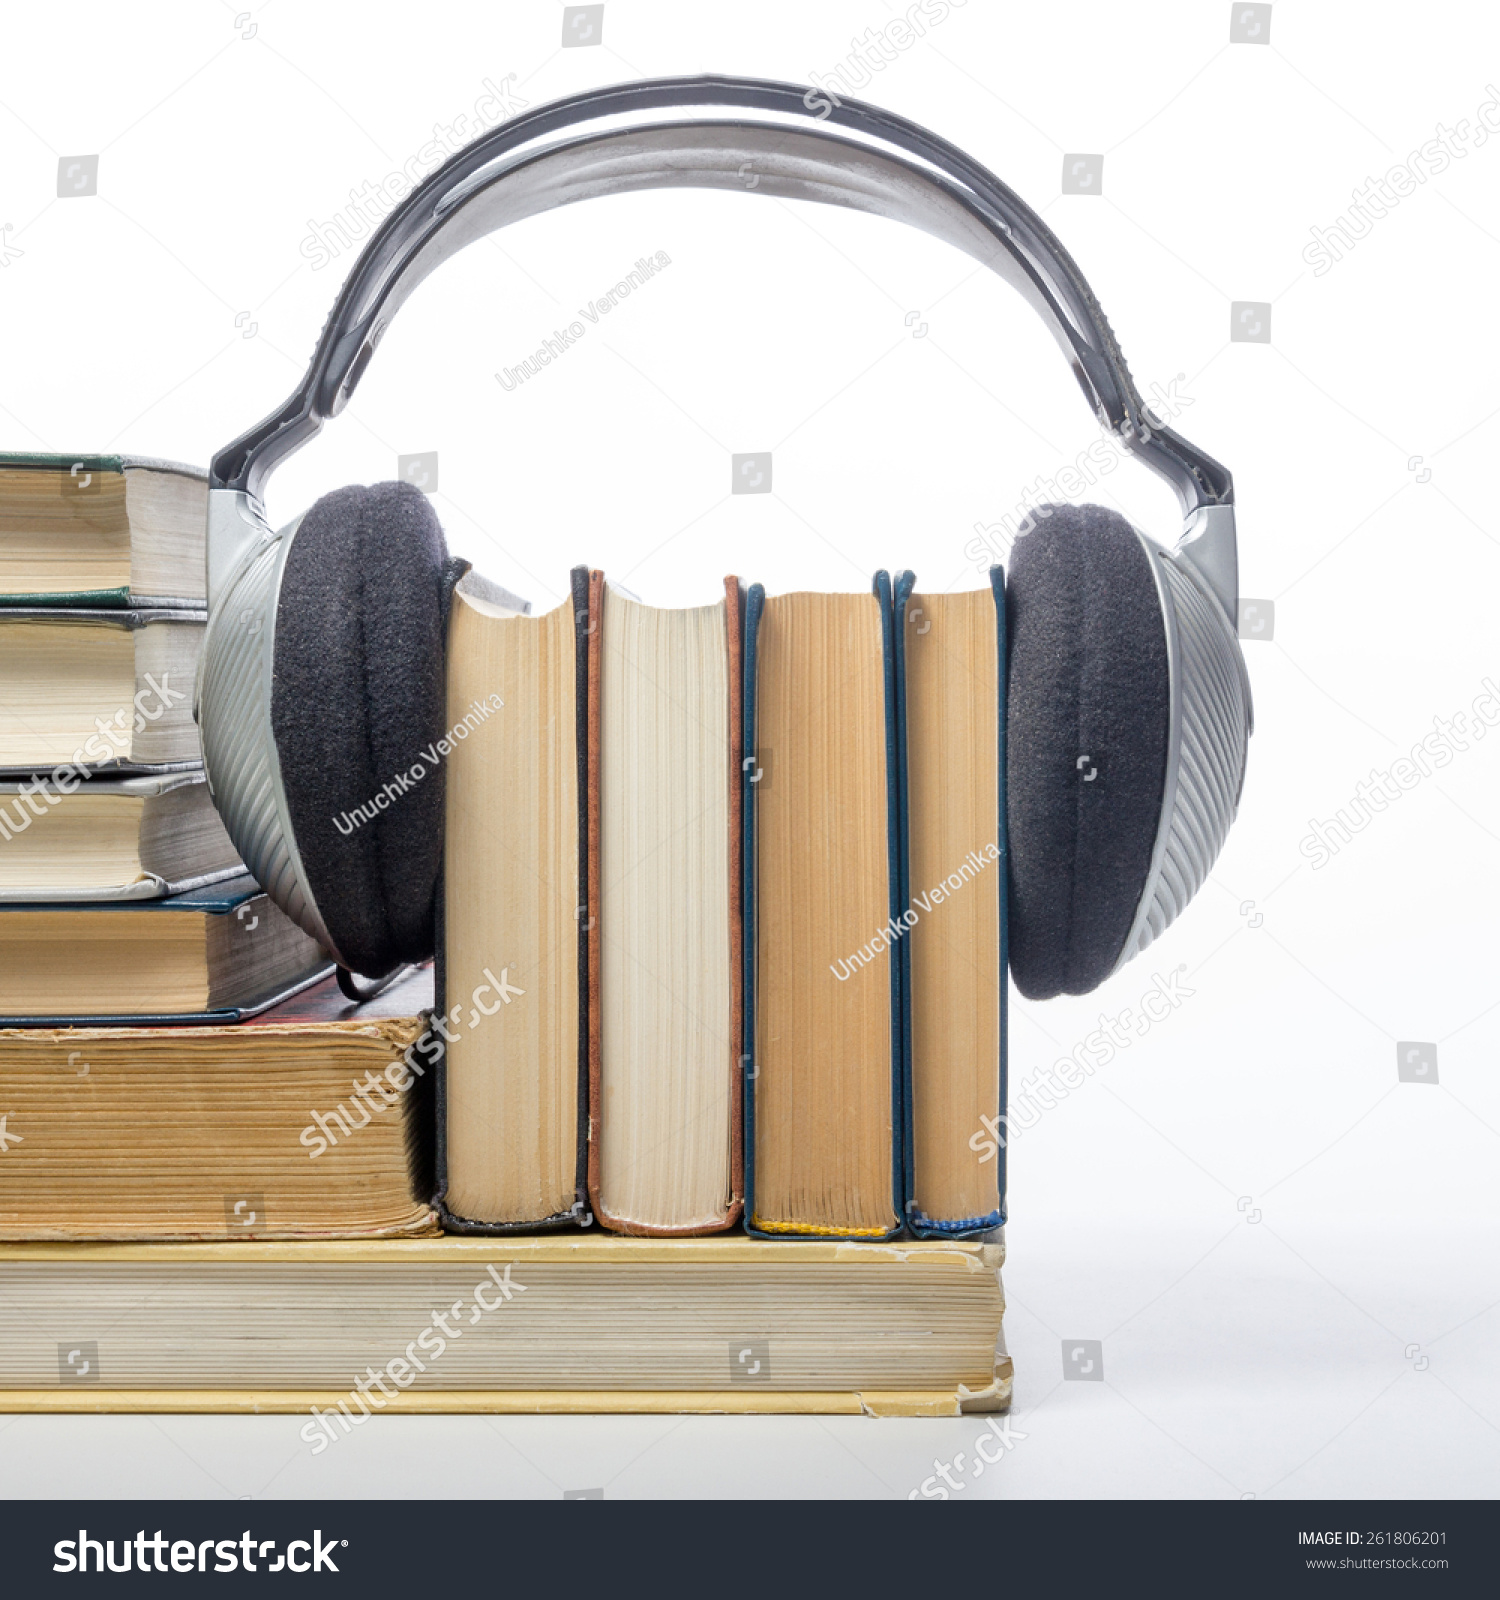 Audiobook Concept Books Headphones Stock Photo 261806201 - Shutterstock